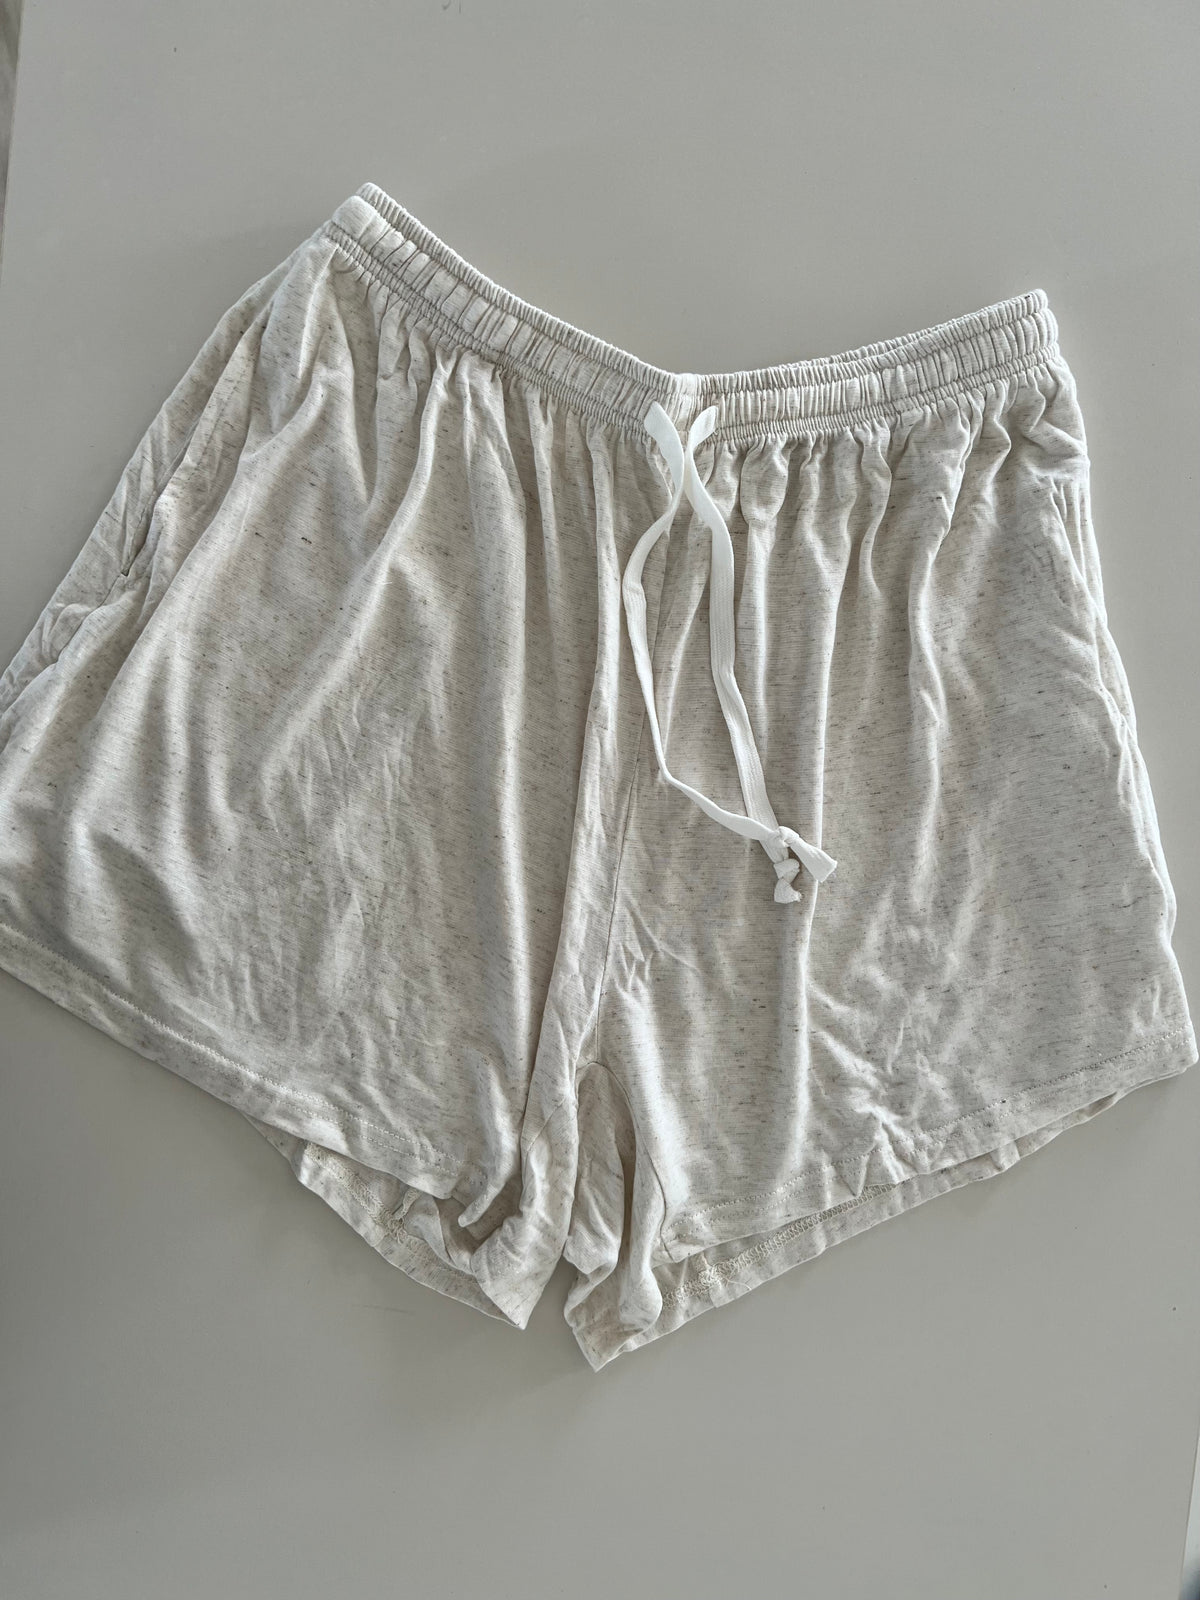 Ladies linen rayon shorts size M/L (seconds)